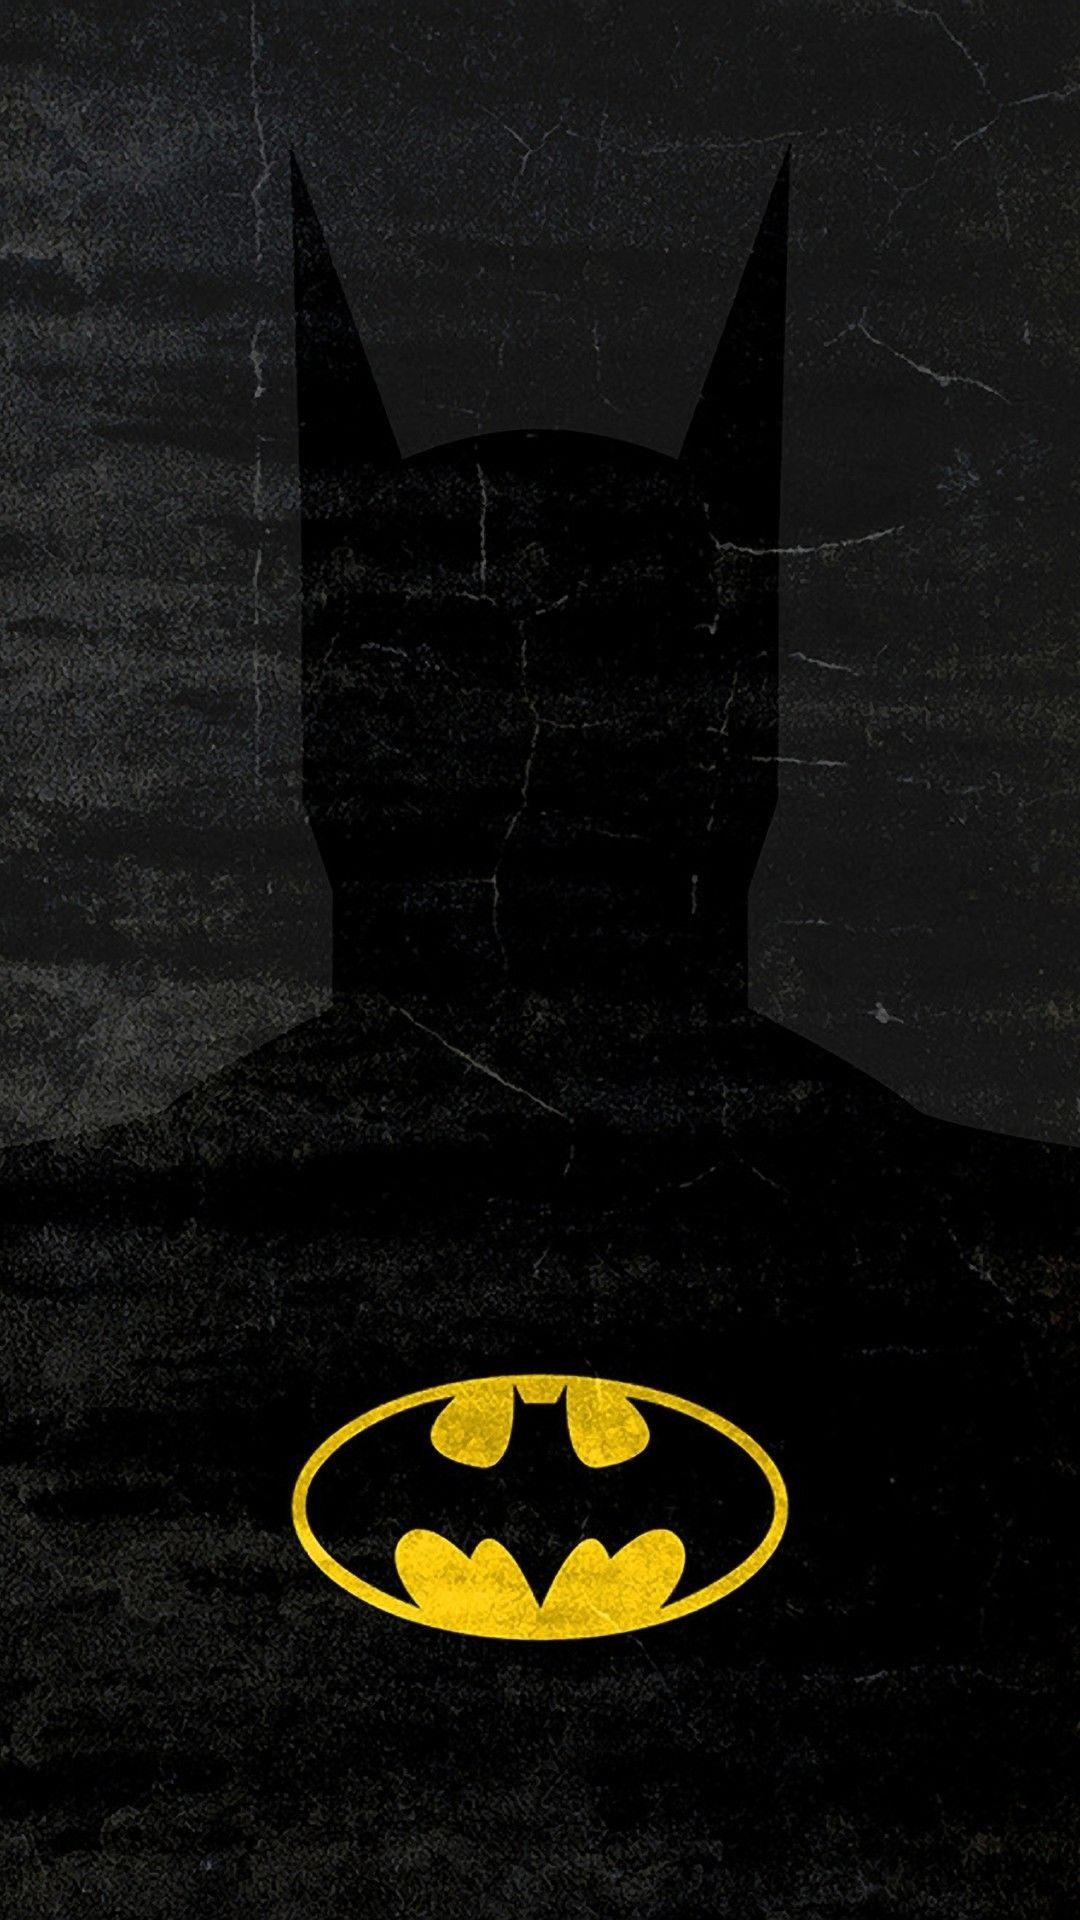 The Batman wallpaper [2109x4571] : r/Amoledbackgrounds